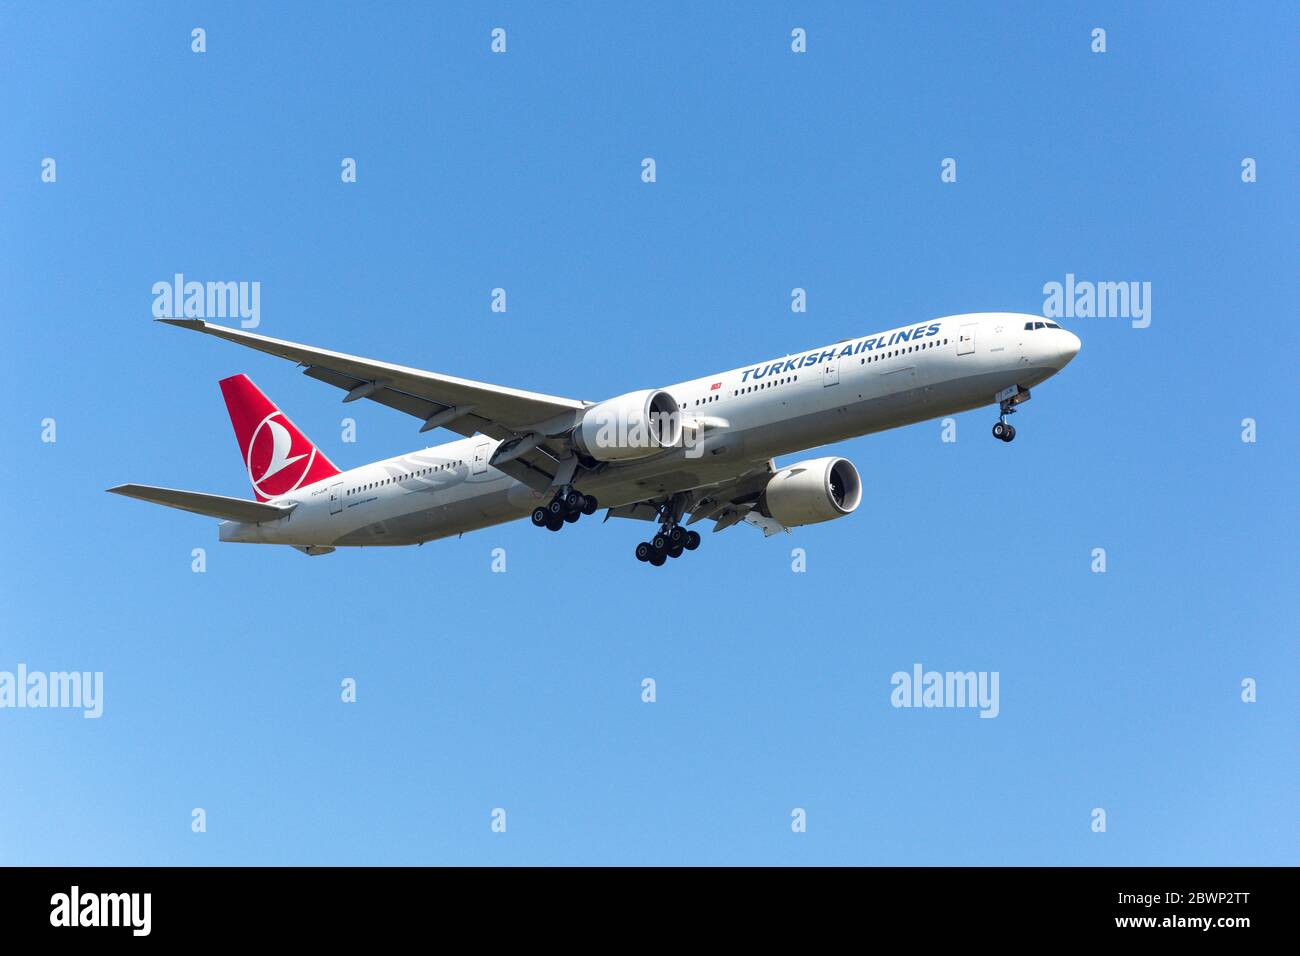 Turkish Airlines Boeing 777 -300 Flugzeuge landen am Flughafen Heathrow, London Borough of Hillingdon, Greater London, England, Großbritannien Stockfoto